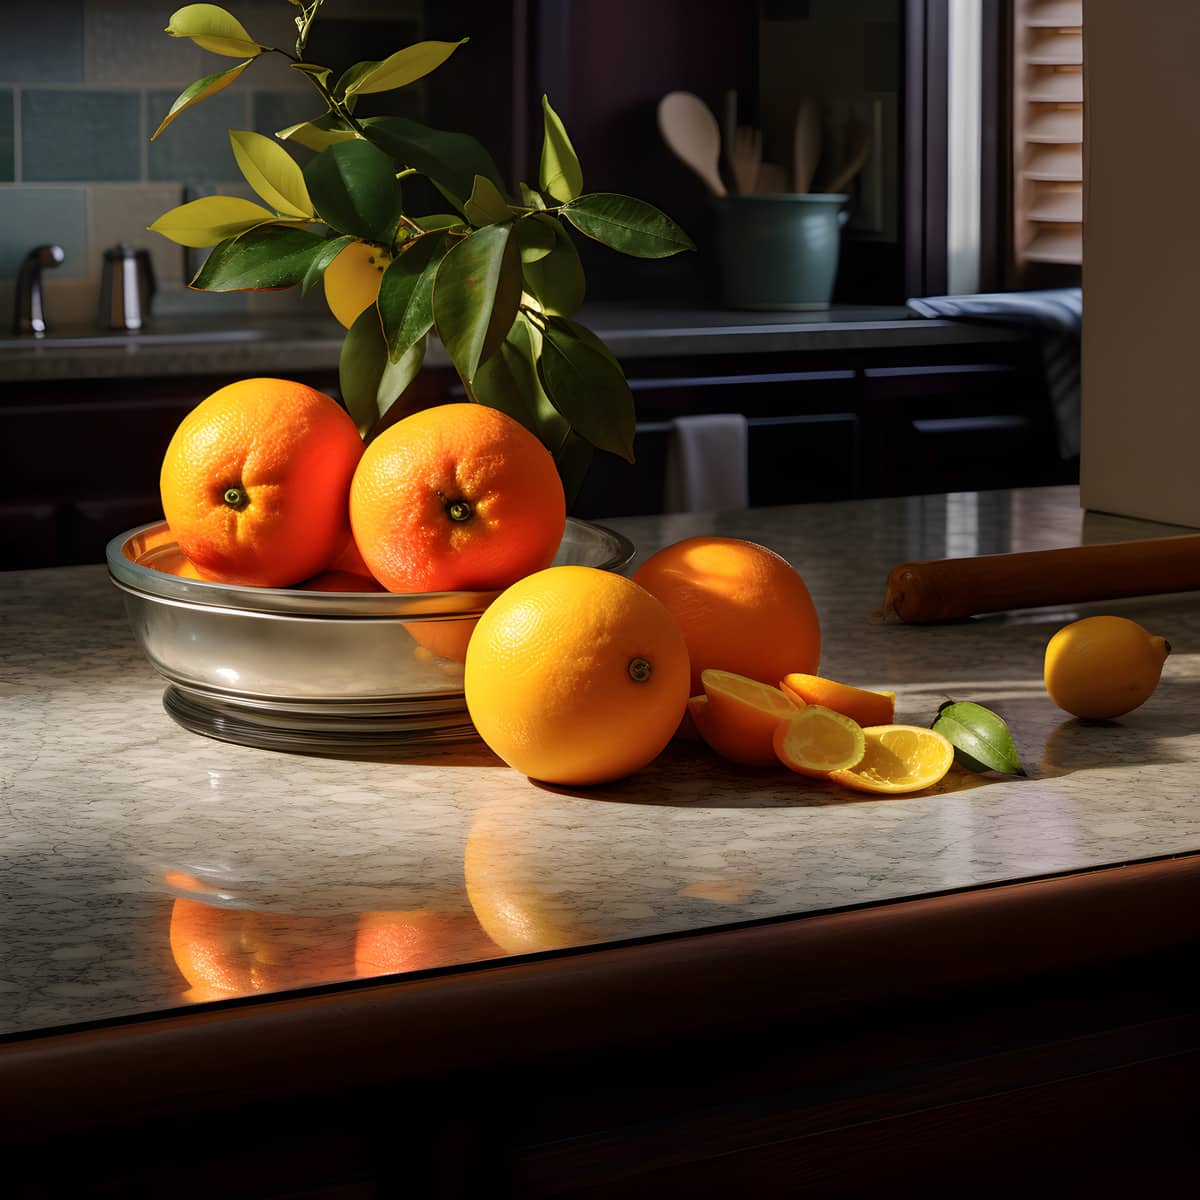 Shangjuan Fruit on a kitchen counter